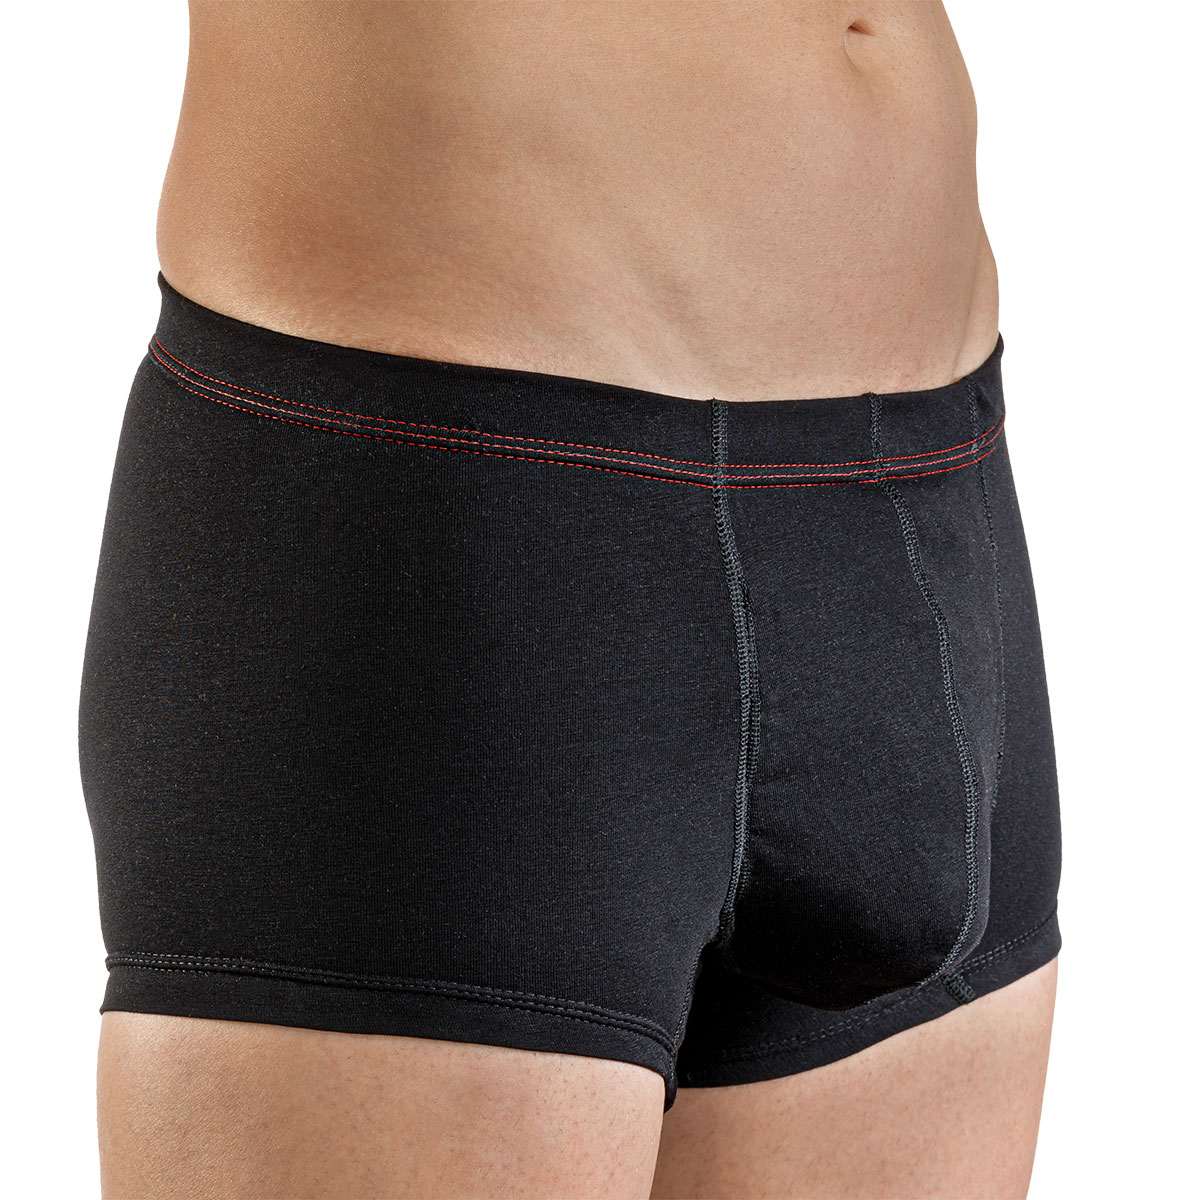 Suprima Bodyguard new life Shorts - Herren-Slip mit integrierter Saugeinlage - 7 schwarz